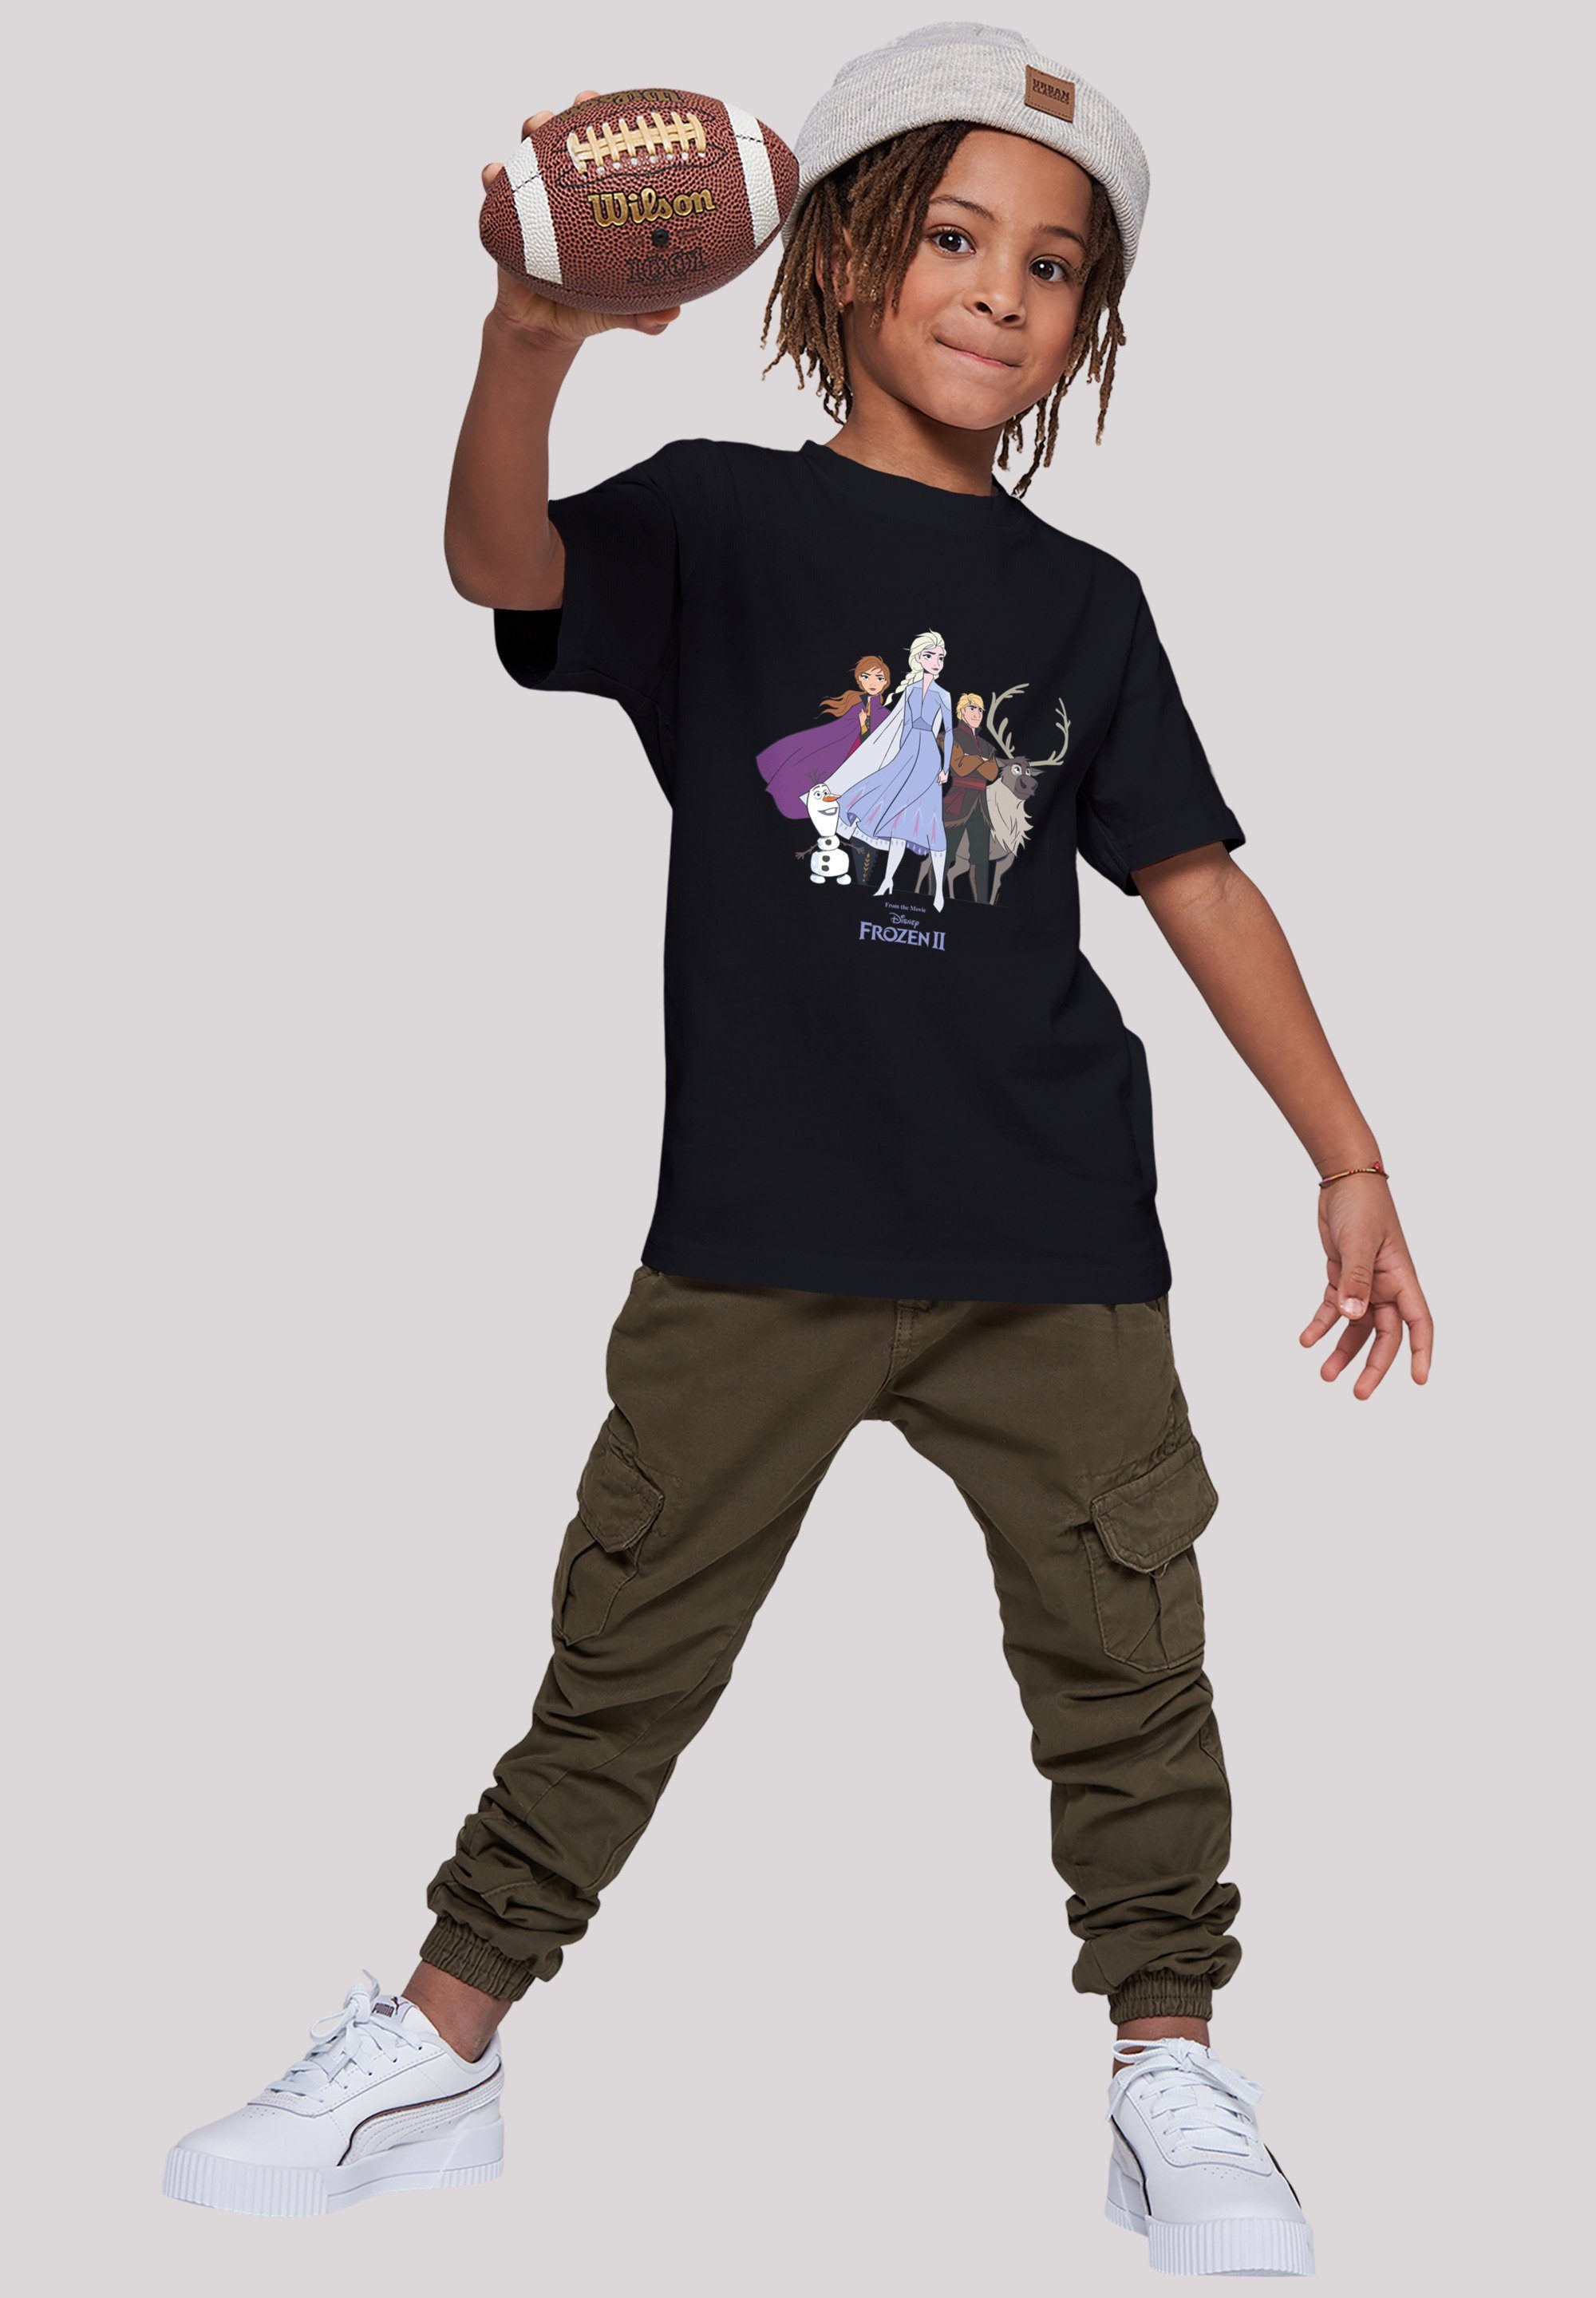 F4NT4STIC T-Shirt Disney Frozen Unisex Kinder,Premium Merch,Jungen, Gruppe Mädchen,Bedruckt 2